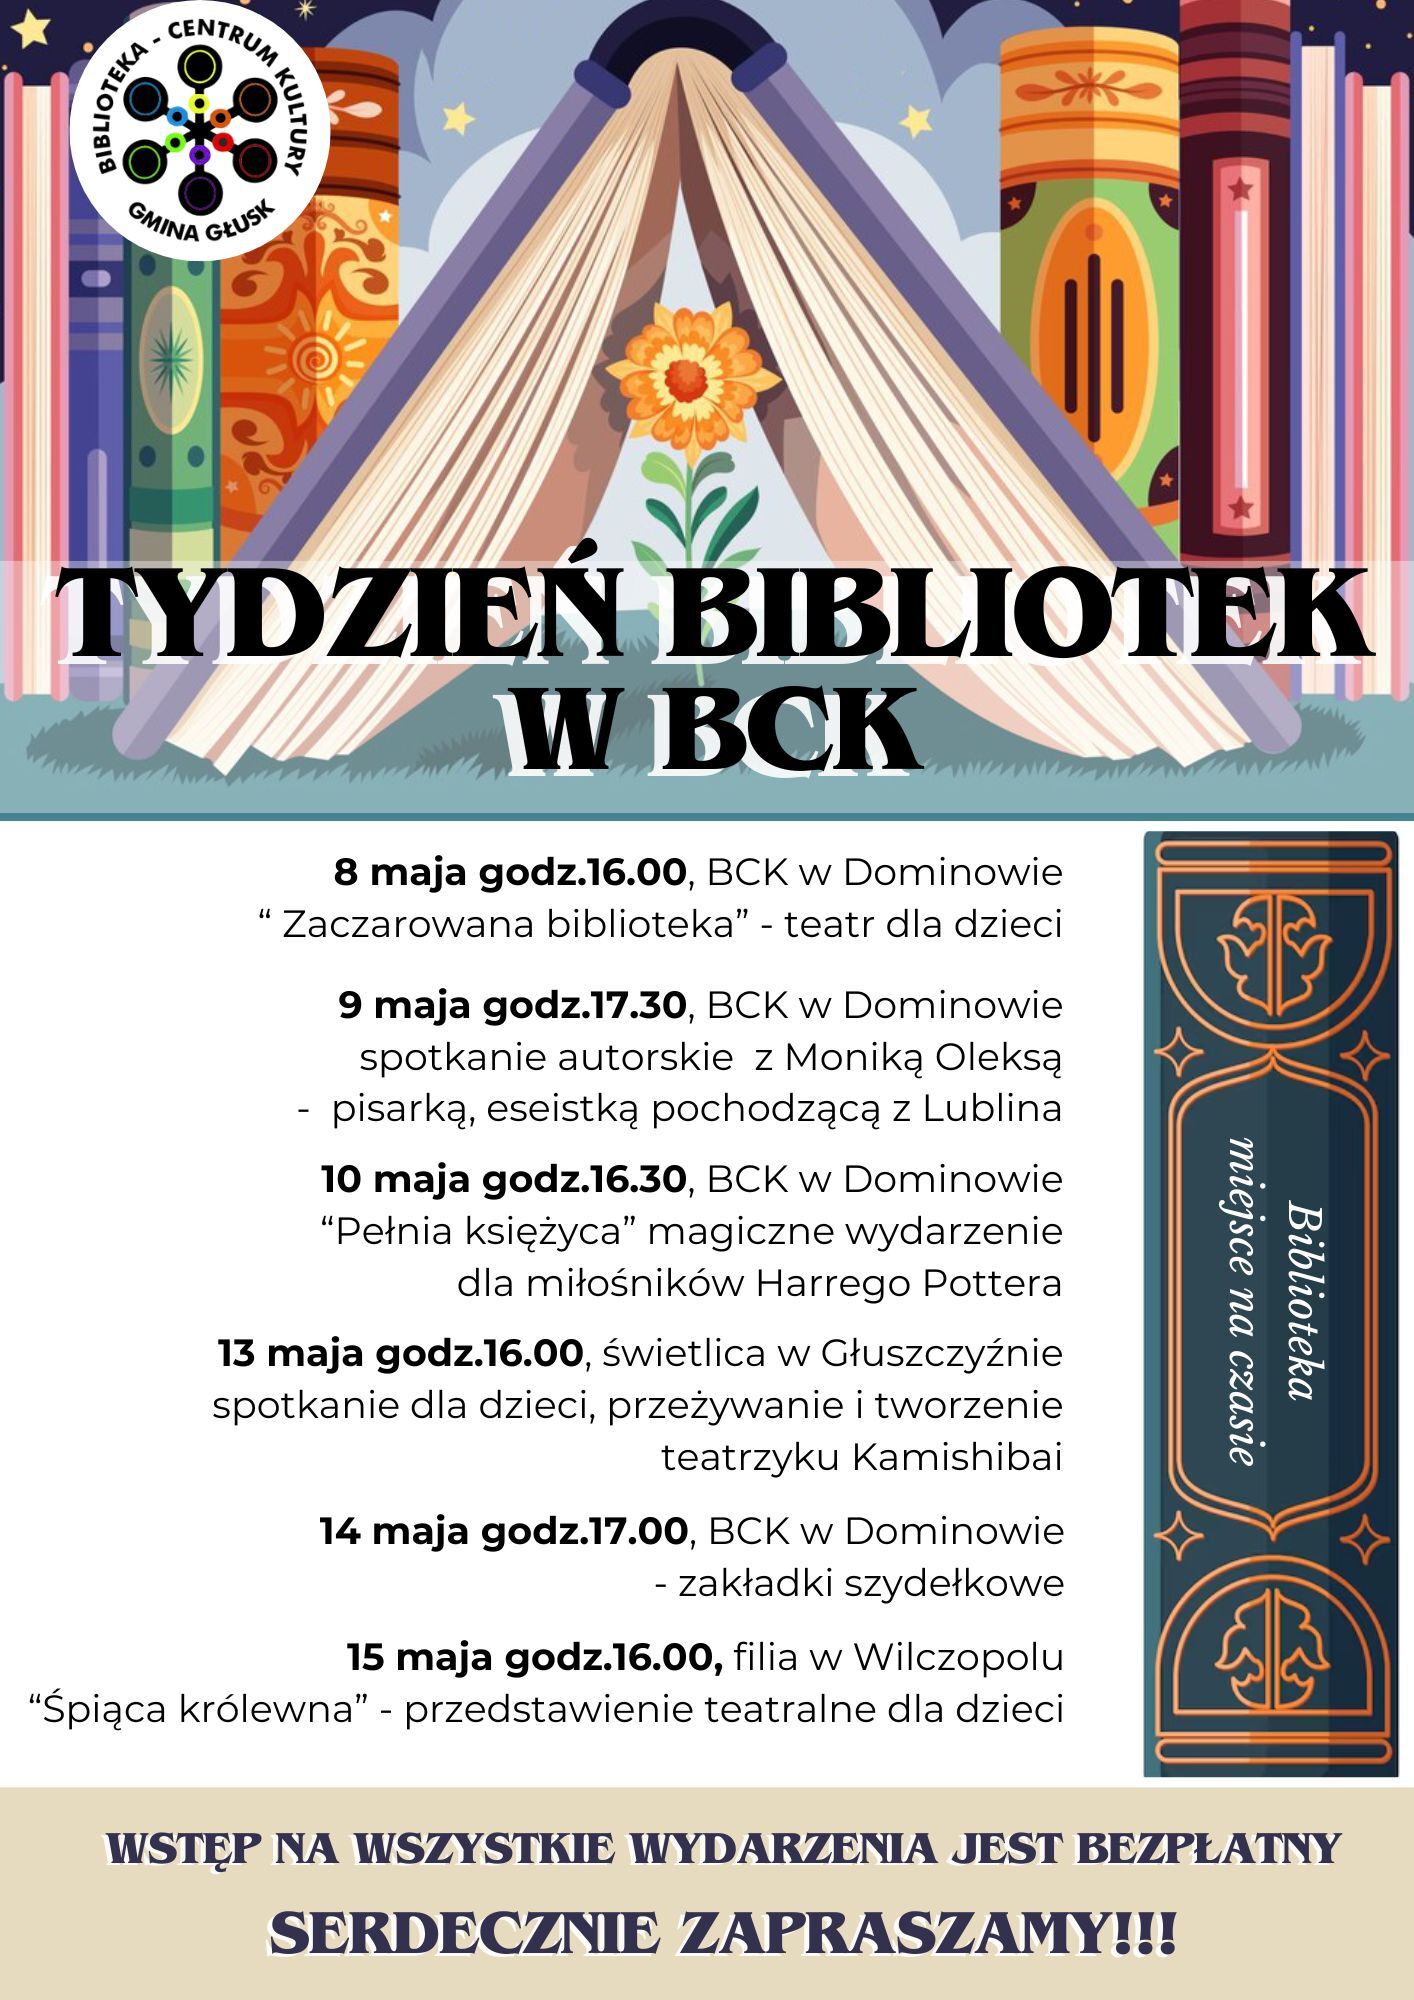 Plakat informacyjny o wydarzeniach dla dzieci organizowanych przez Bibliotekę w Białostockim Centrum Kultury, z ilustracją kolorowych książek i wieżowców, z datami i godzinami.